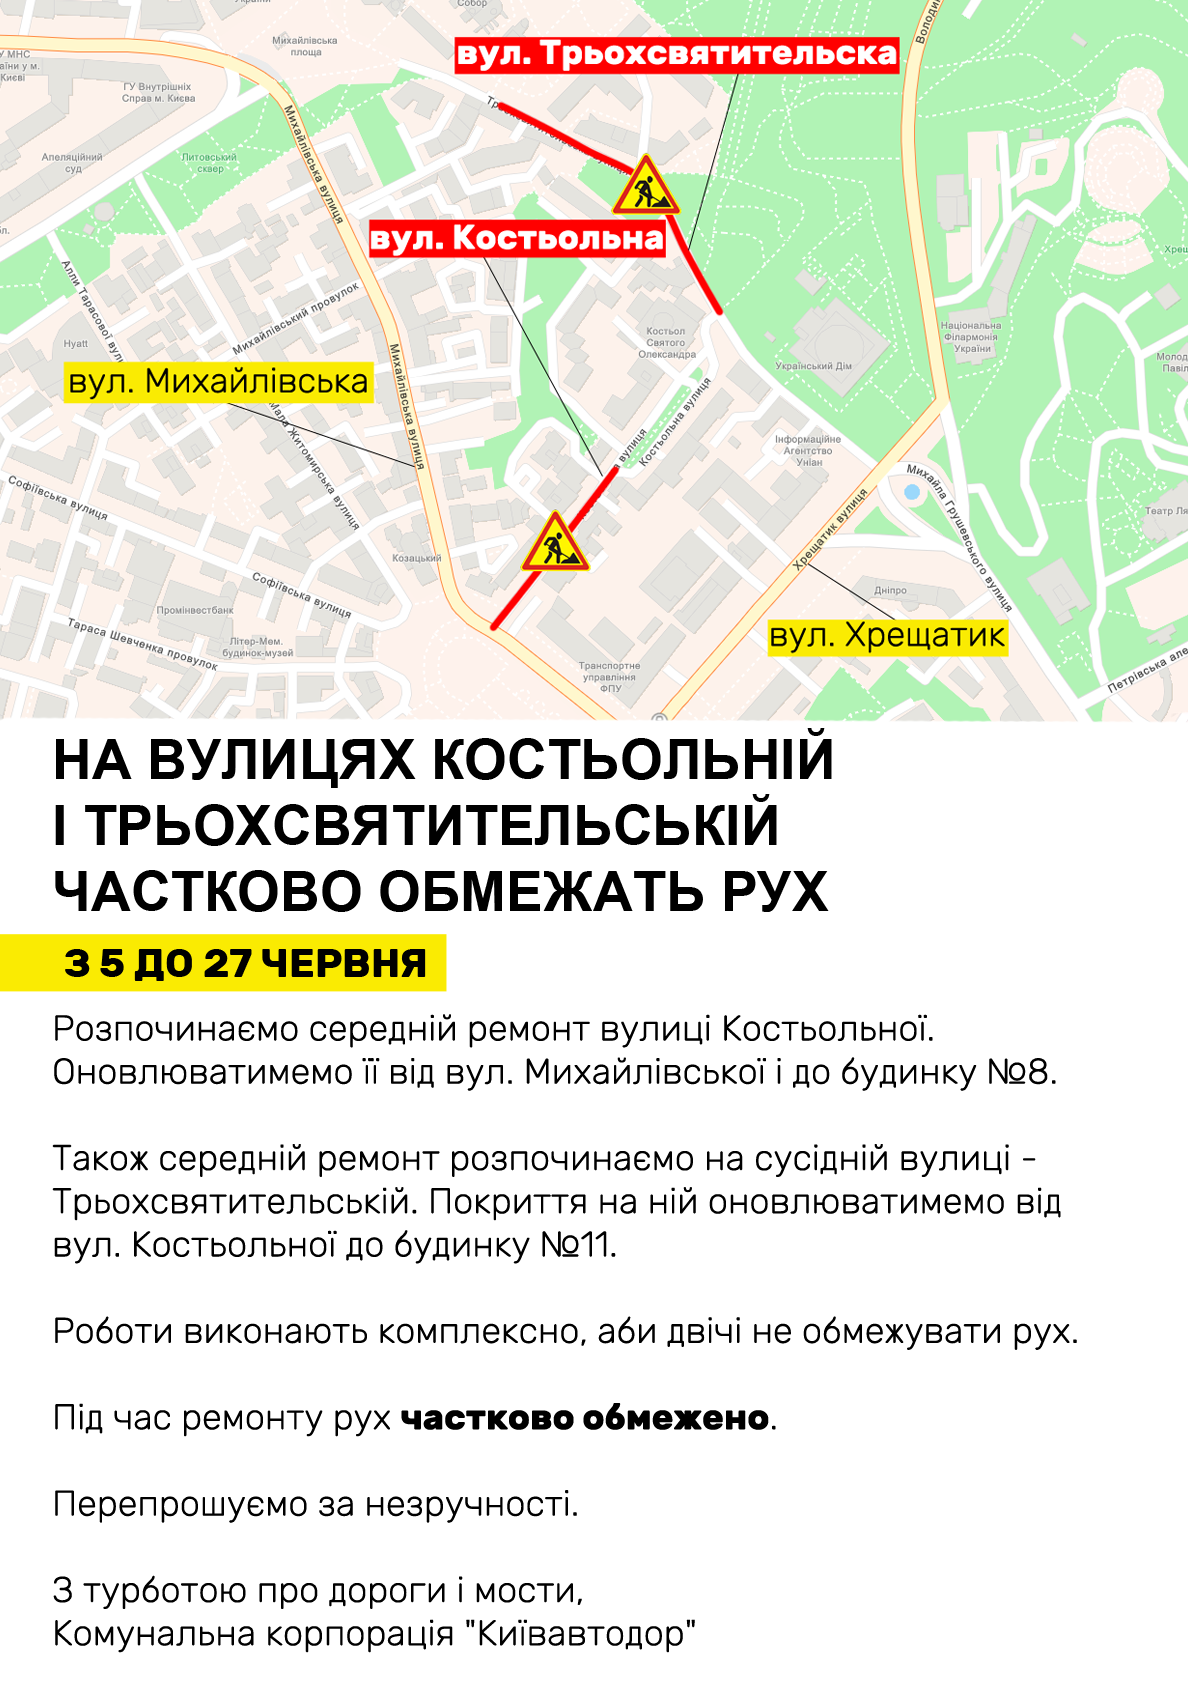 Ремонт дорог: где в Киеве ограничат движение до конца июня